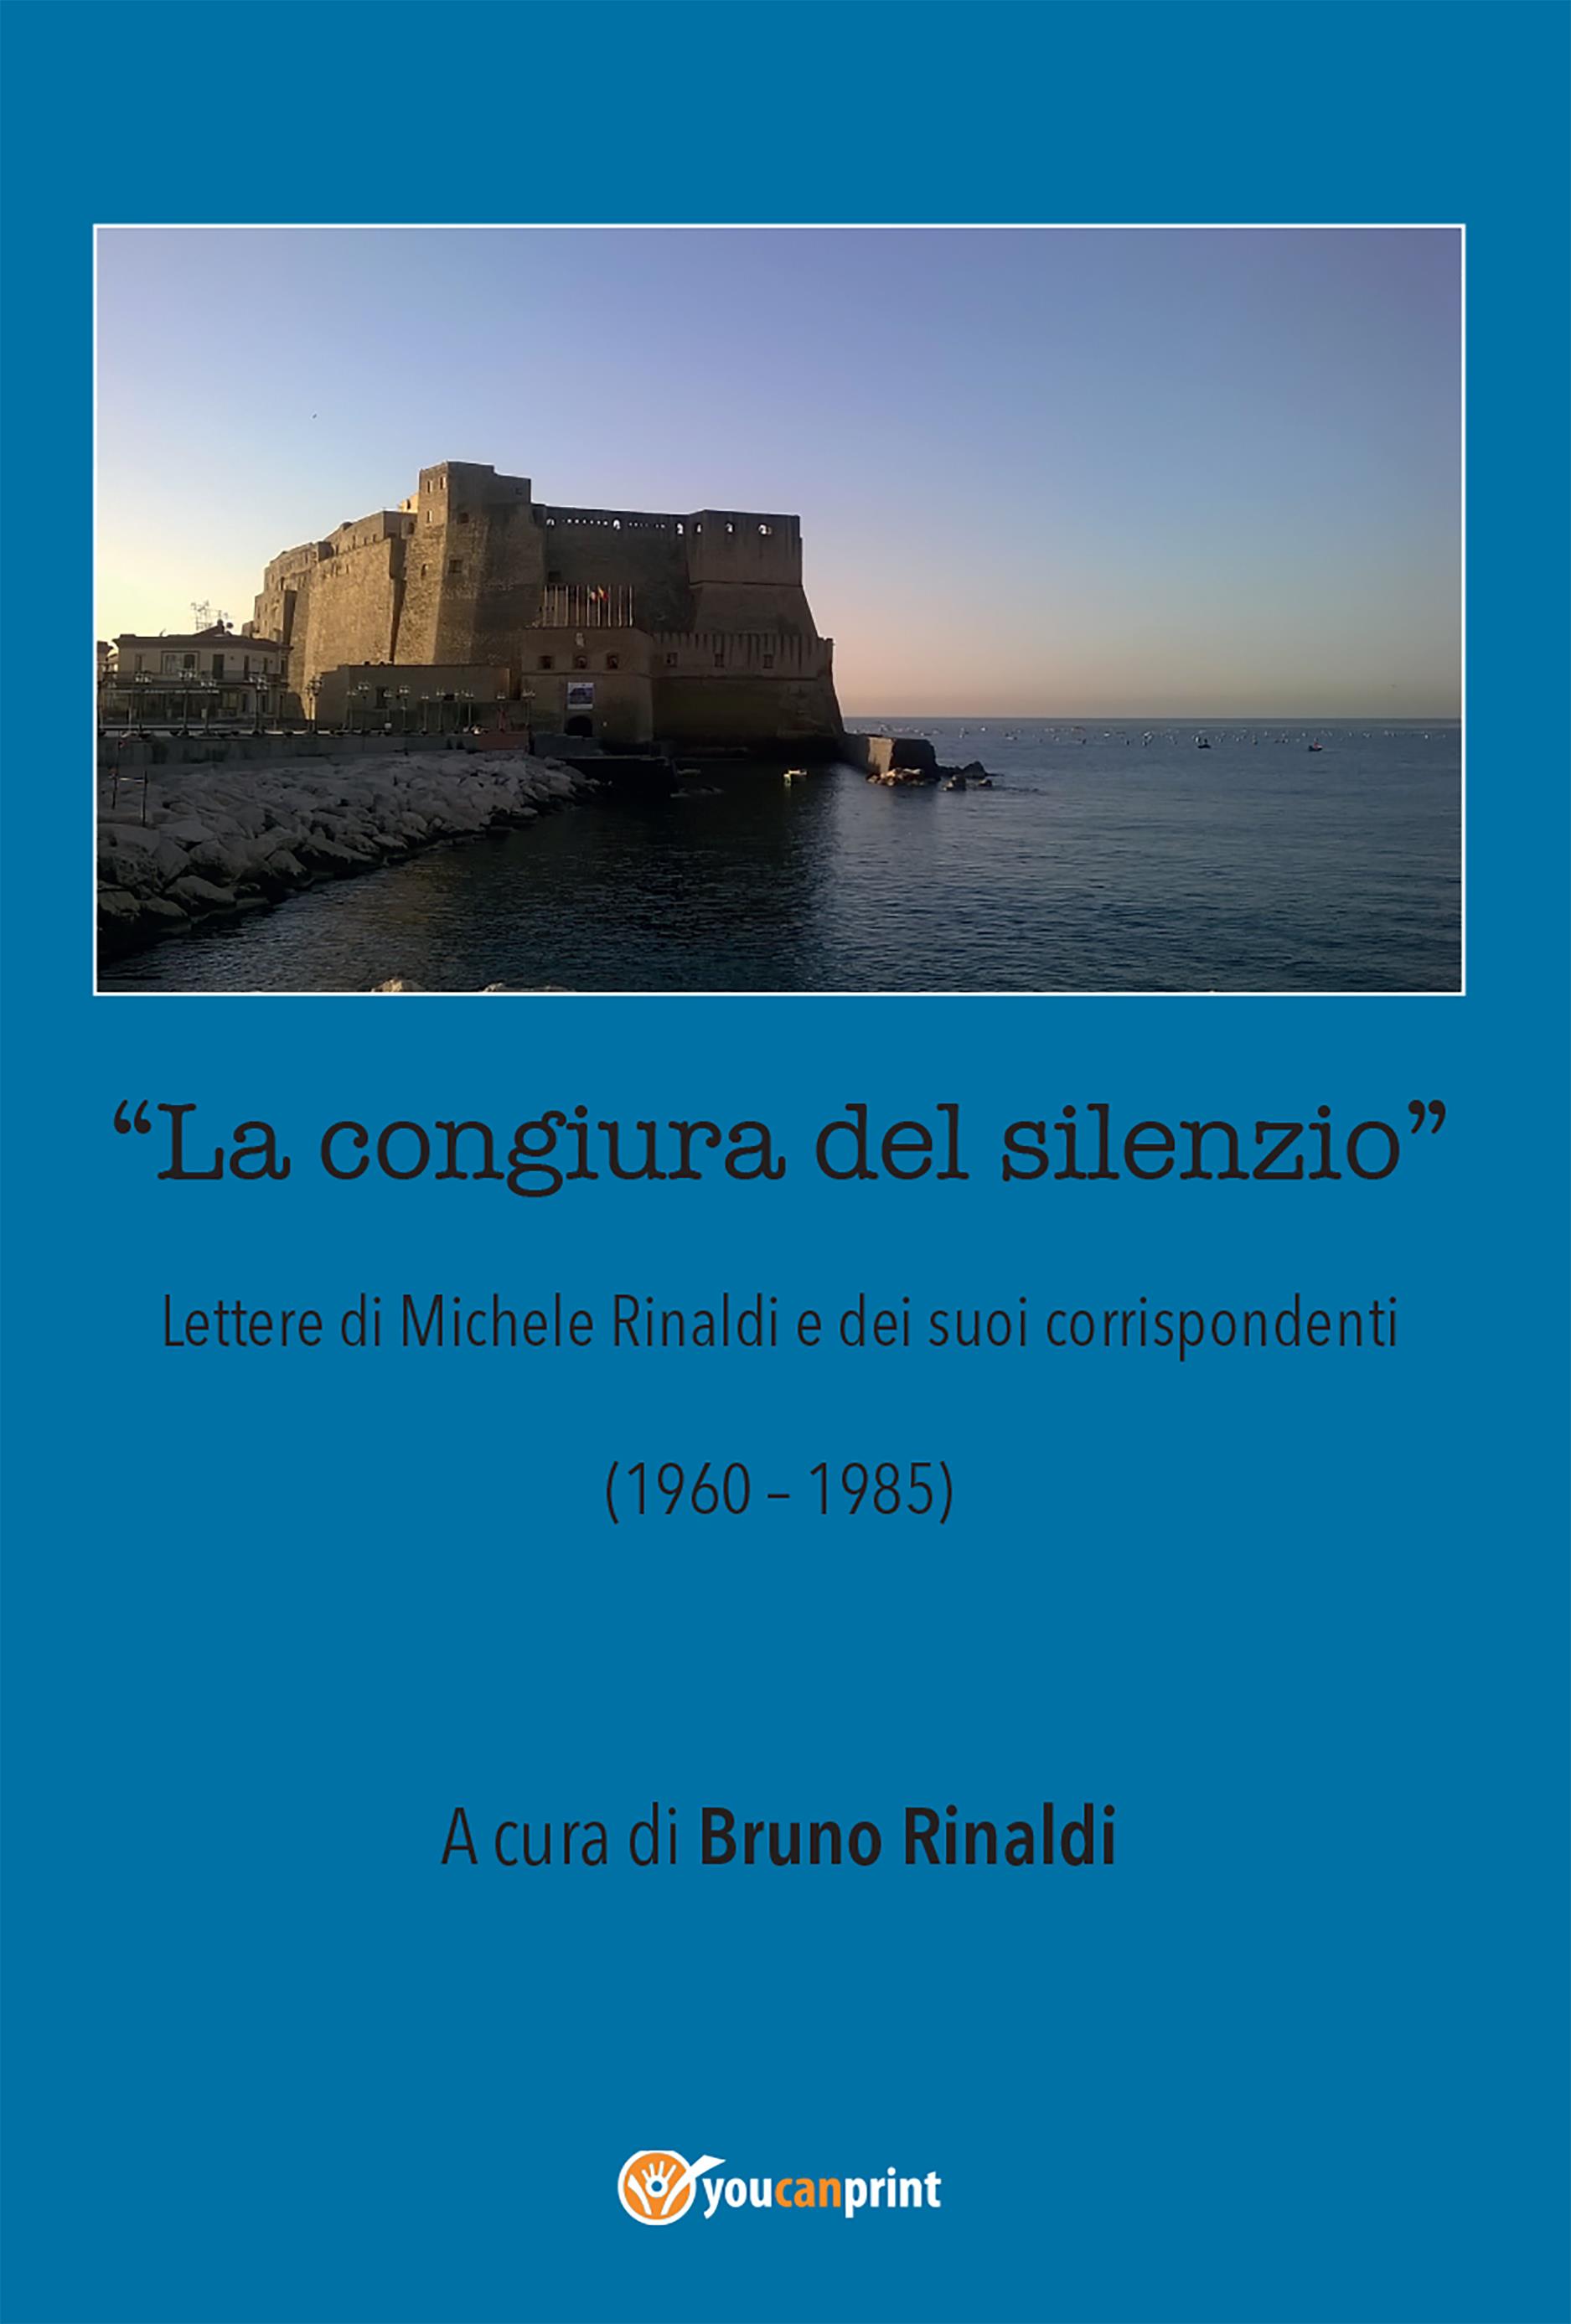 La congiura del silenzio - Lettere di Michele Rinaldi  e dei suoi corrispondenti (1960-1985)